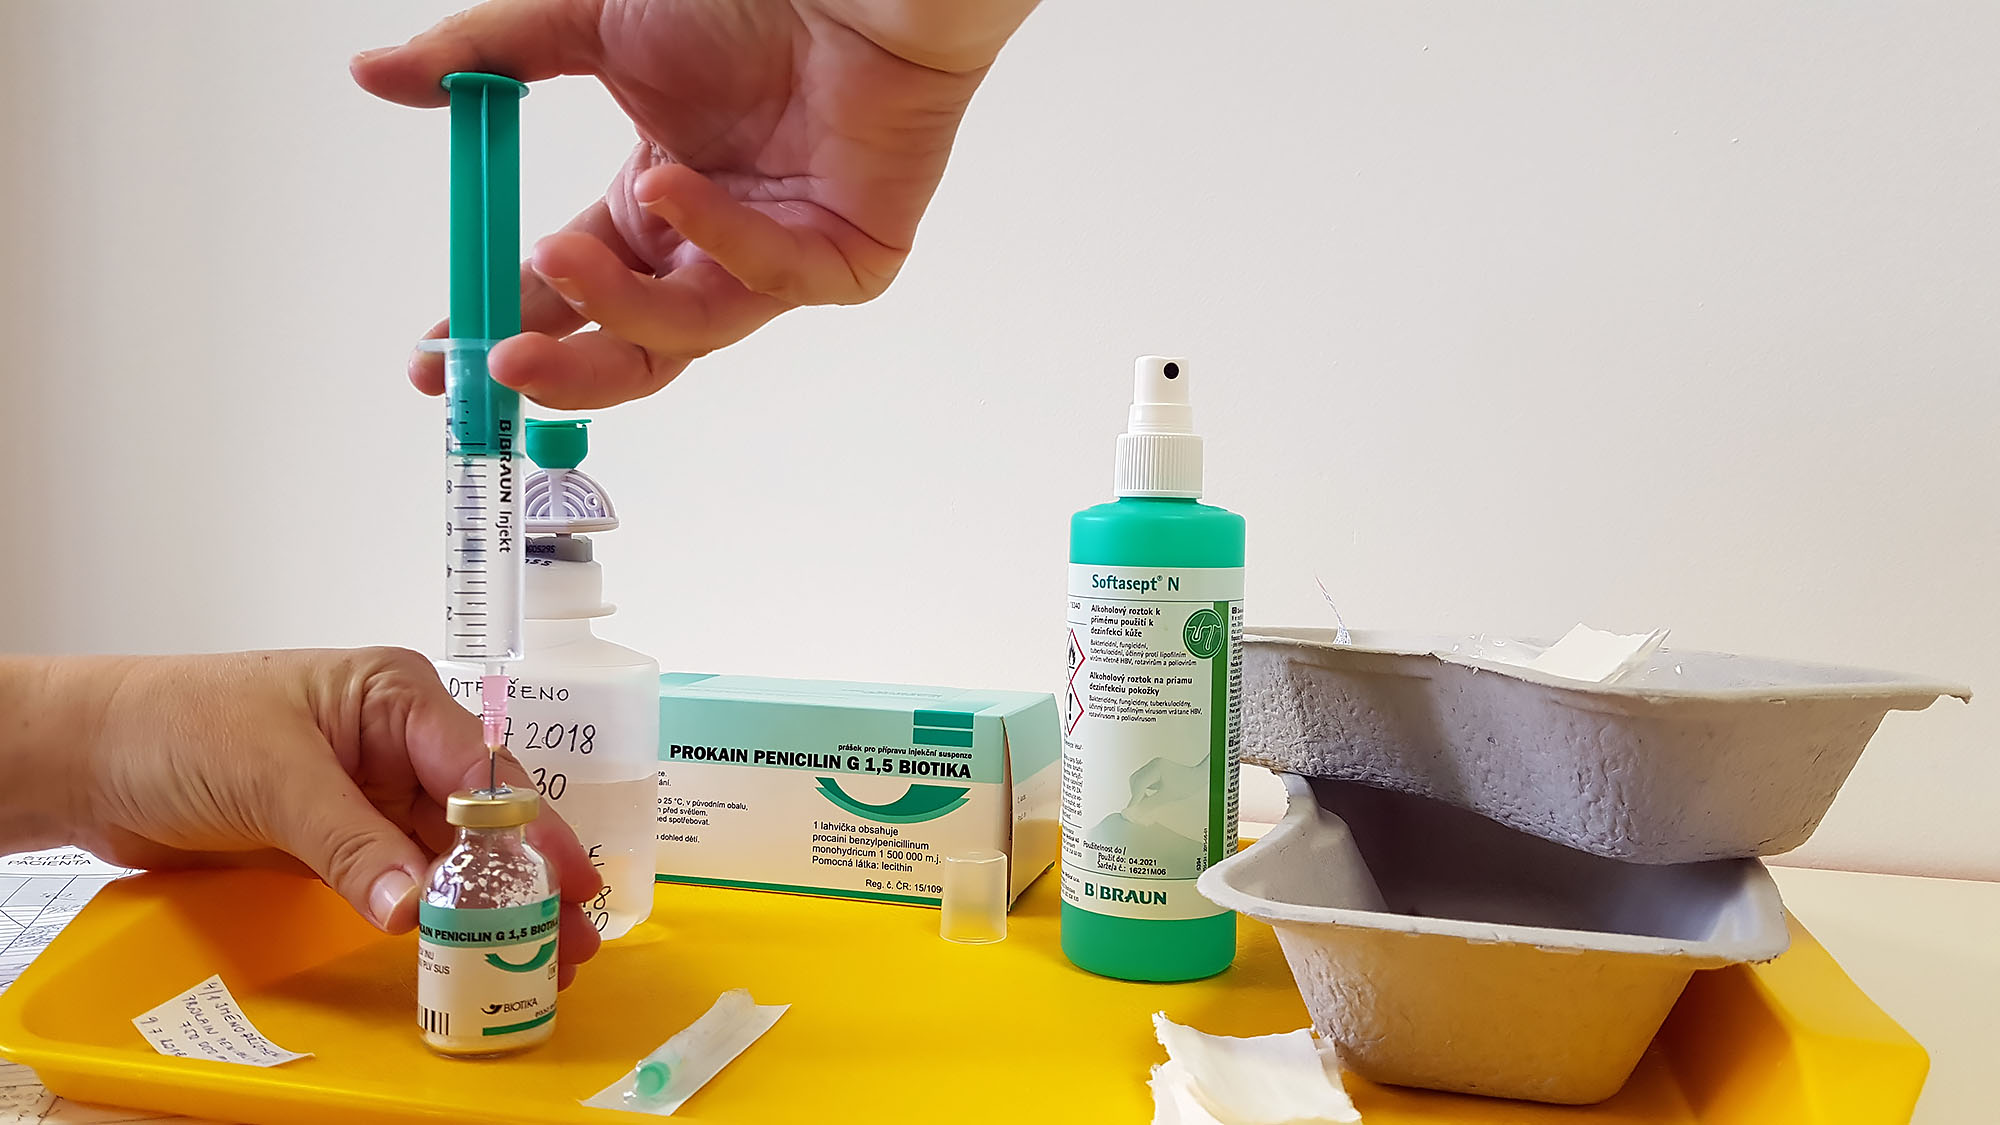 Příprava léčiva v práškové formě 3 – vstříknutí ředícího roztoku do lahvičky s léčivem